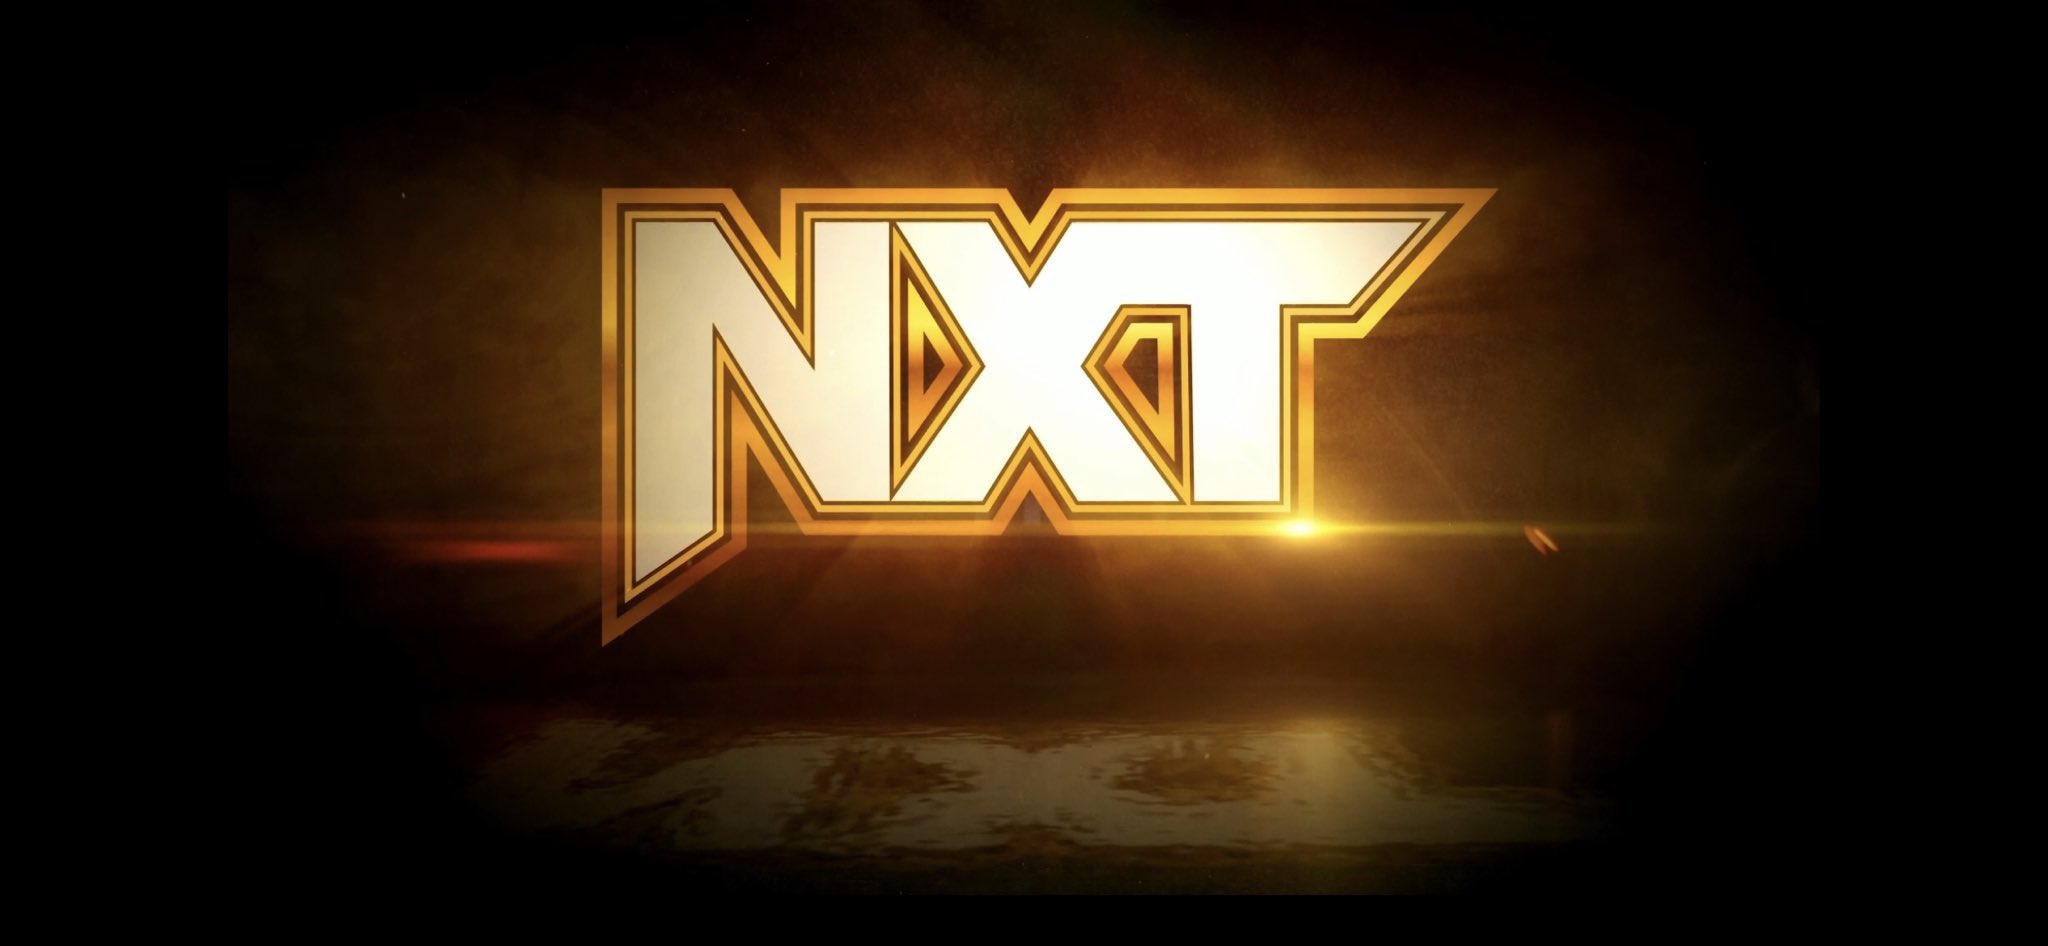 NXT Live Event Results Dec. 16 & Dec. 17